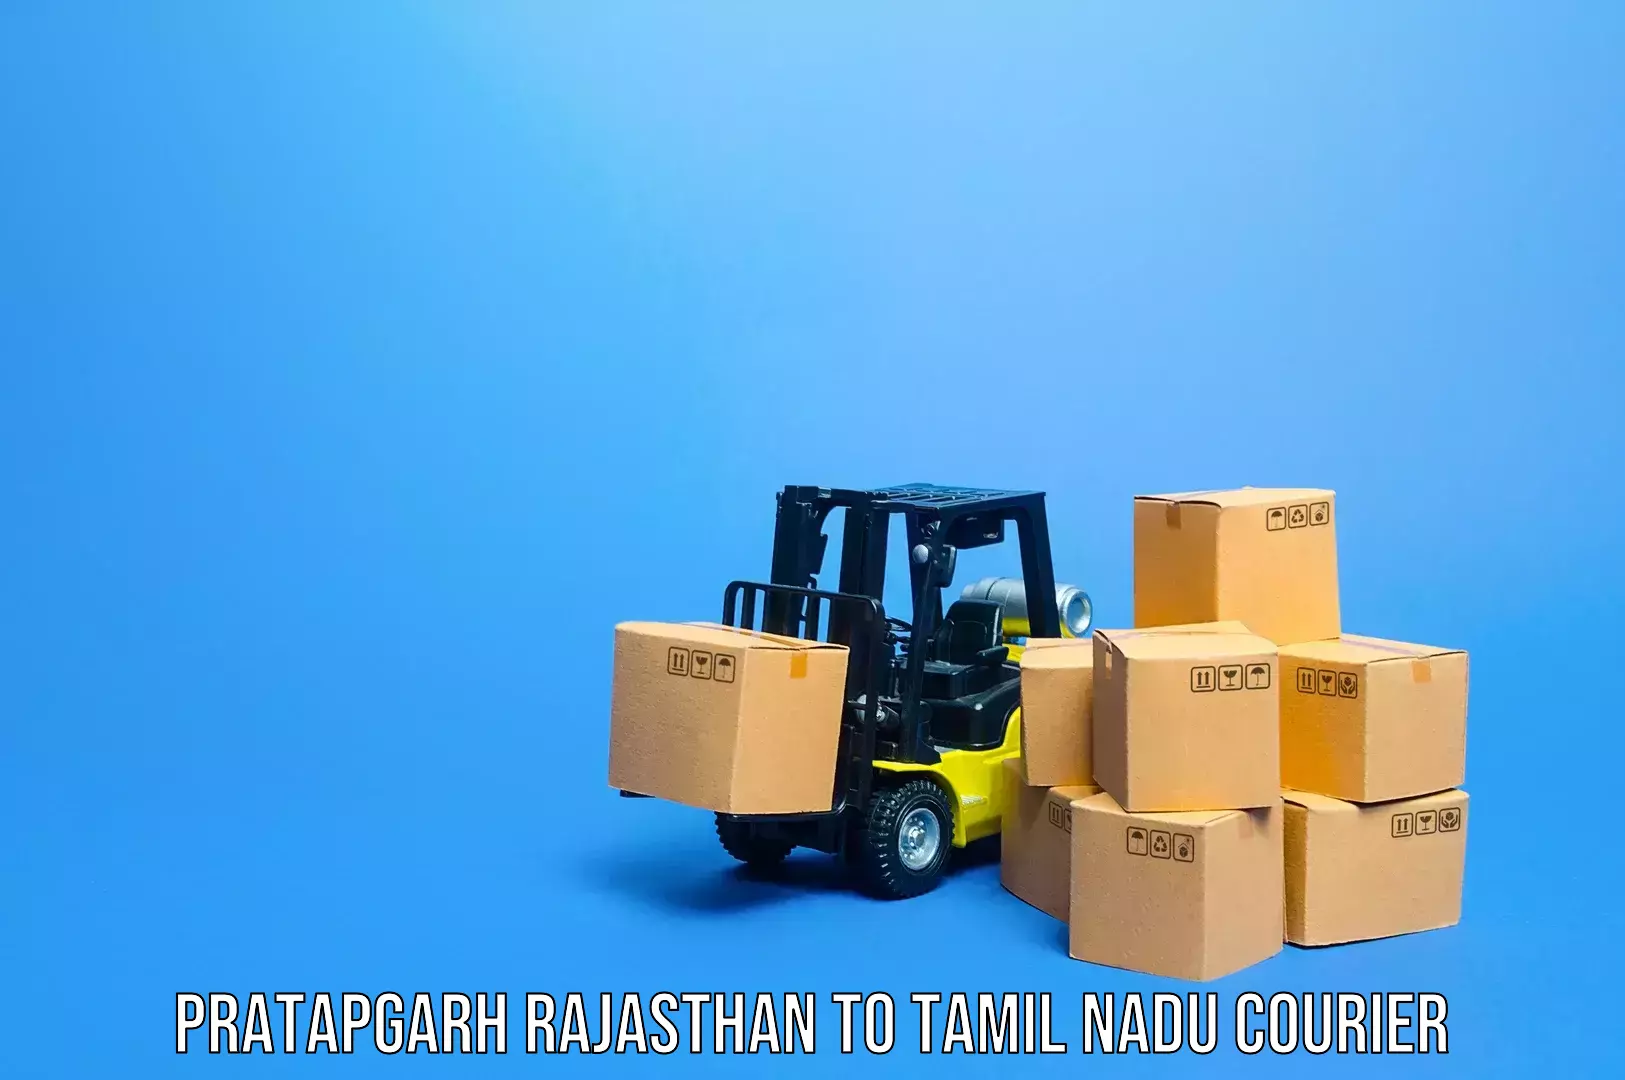 Personalized luggage shipping Pratapgarh Rajasthan to Thiruvarur